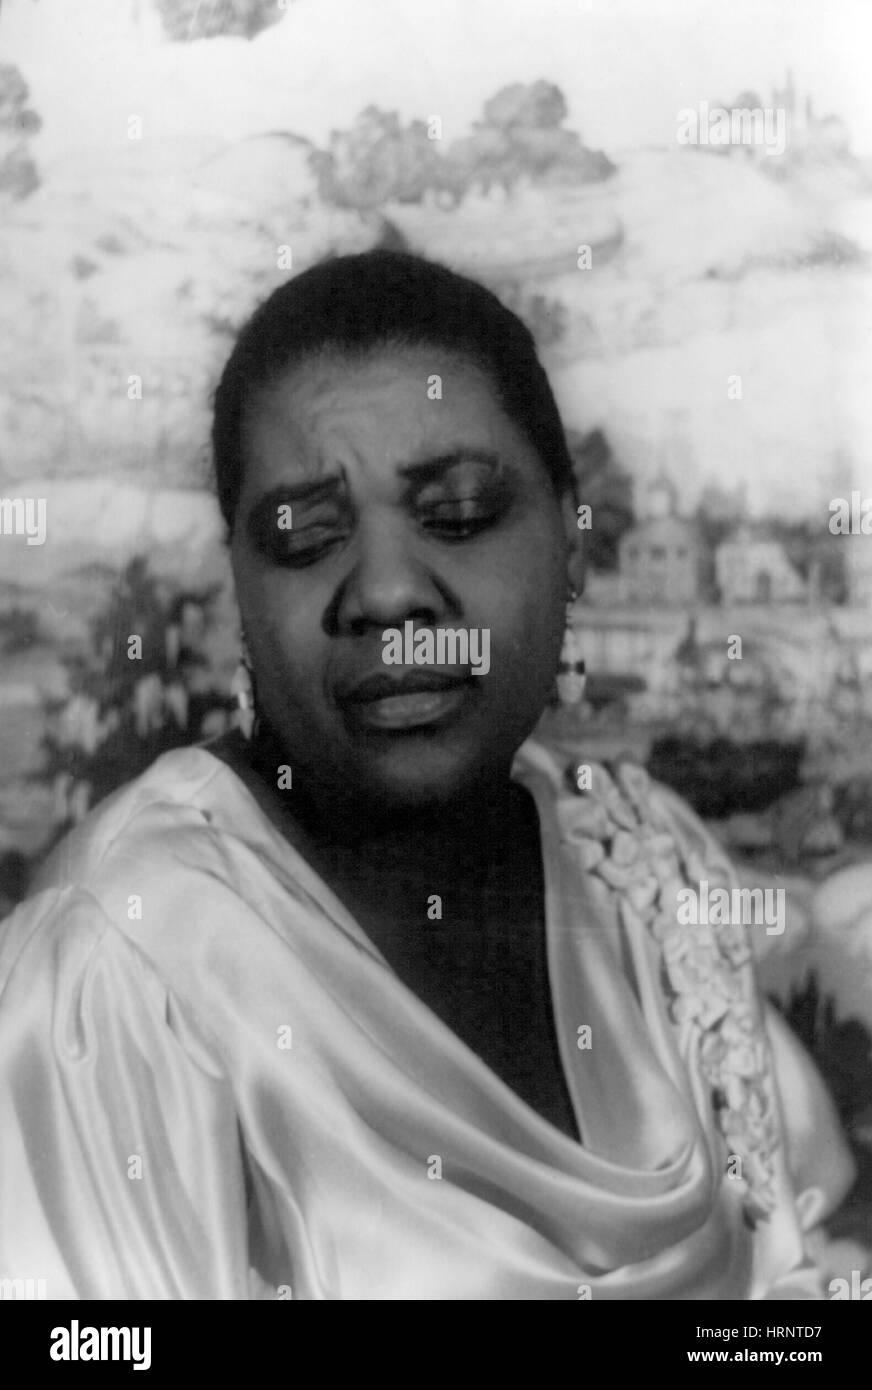 Bessie Smith, chanteur de blues américain Banque D'Images